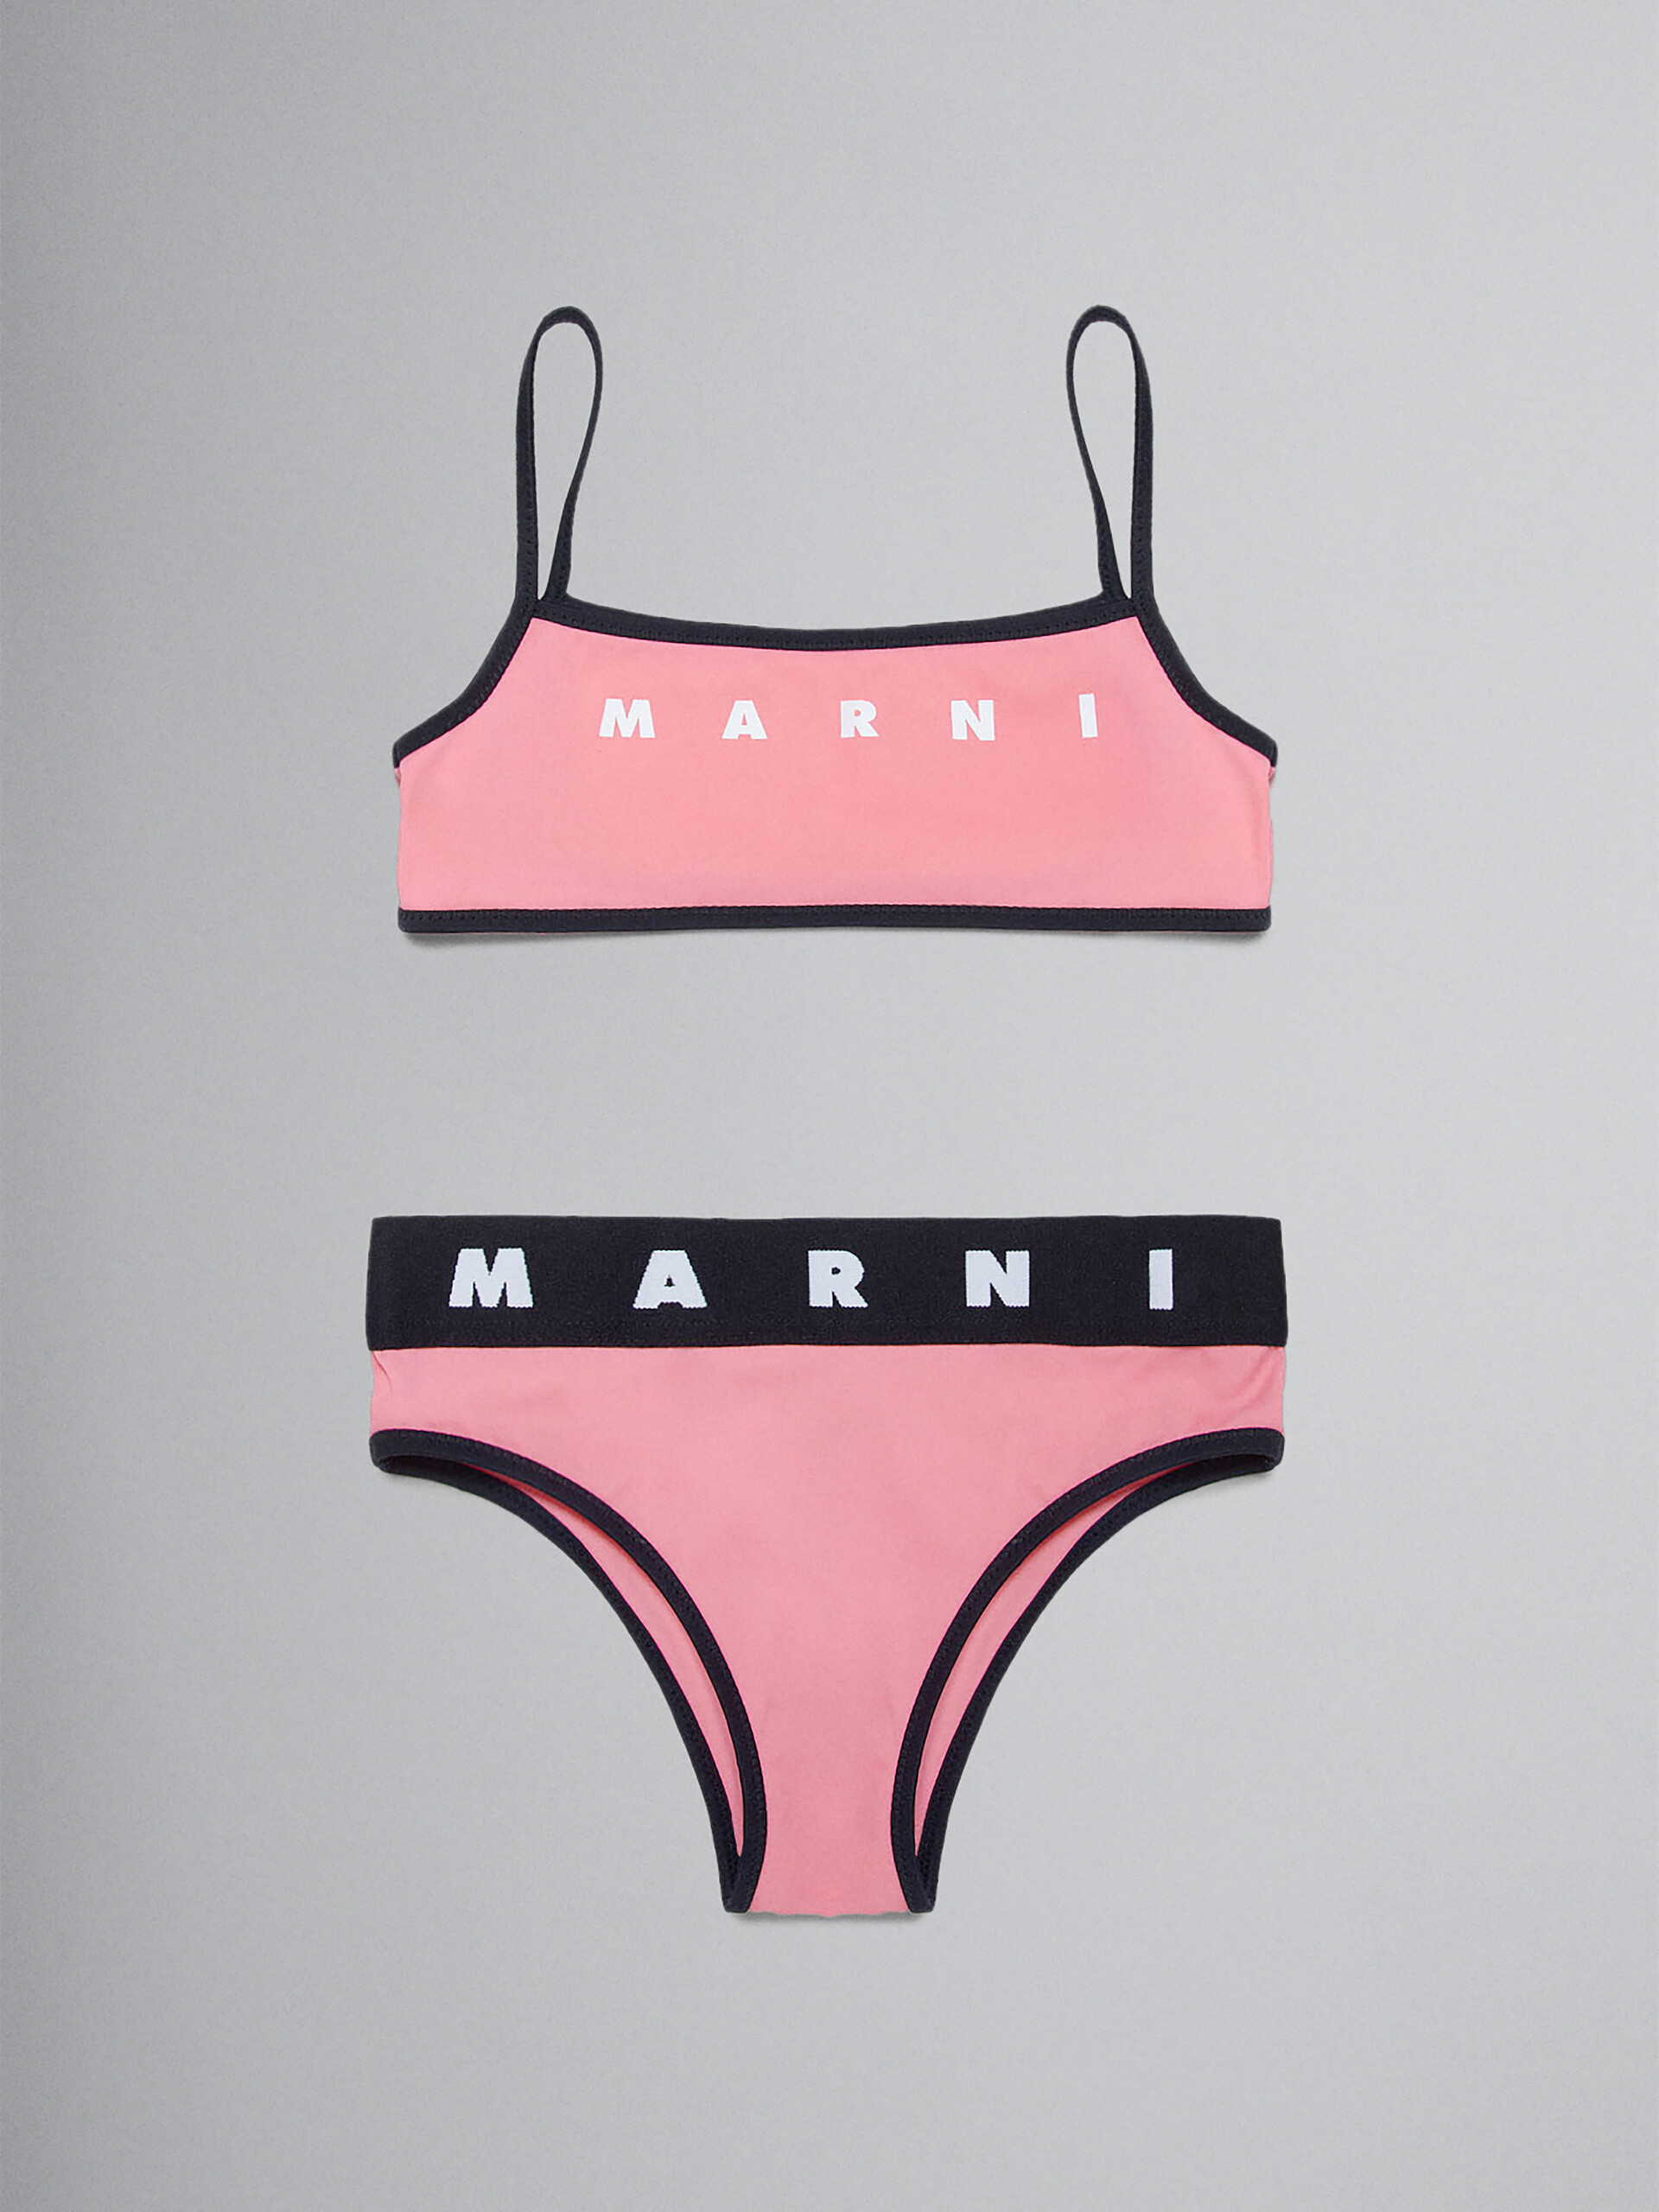 Pinker Bikini mit Logo - Badekleidung - Image 1